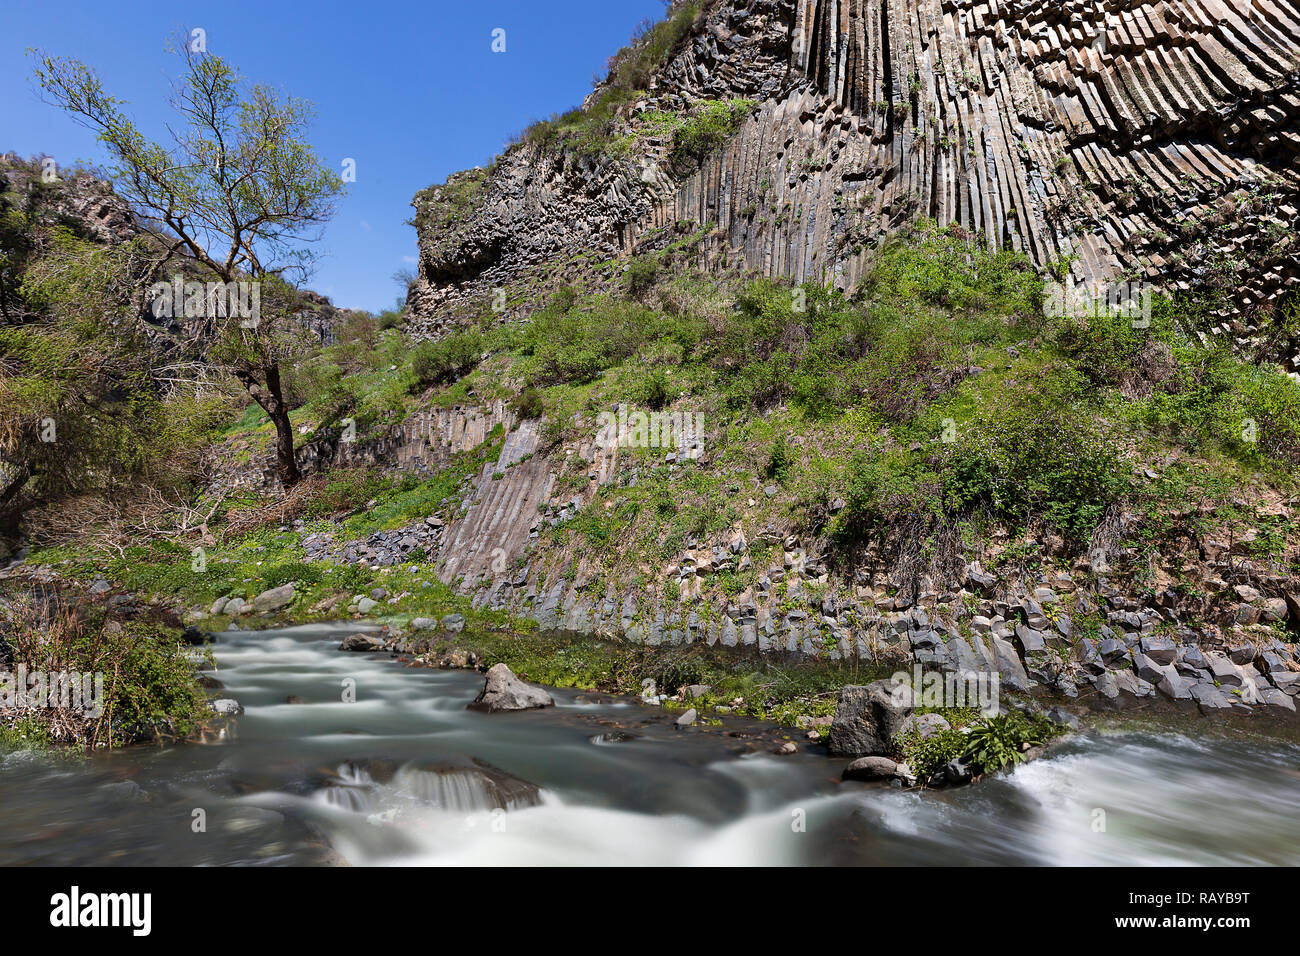 Formaciones de roca basáltica conocida como la sinfonía de las piedras, en Garni, Armenia. Foto de stock